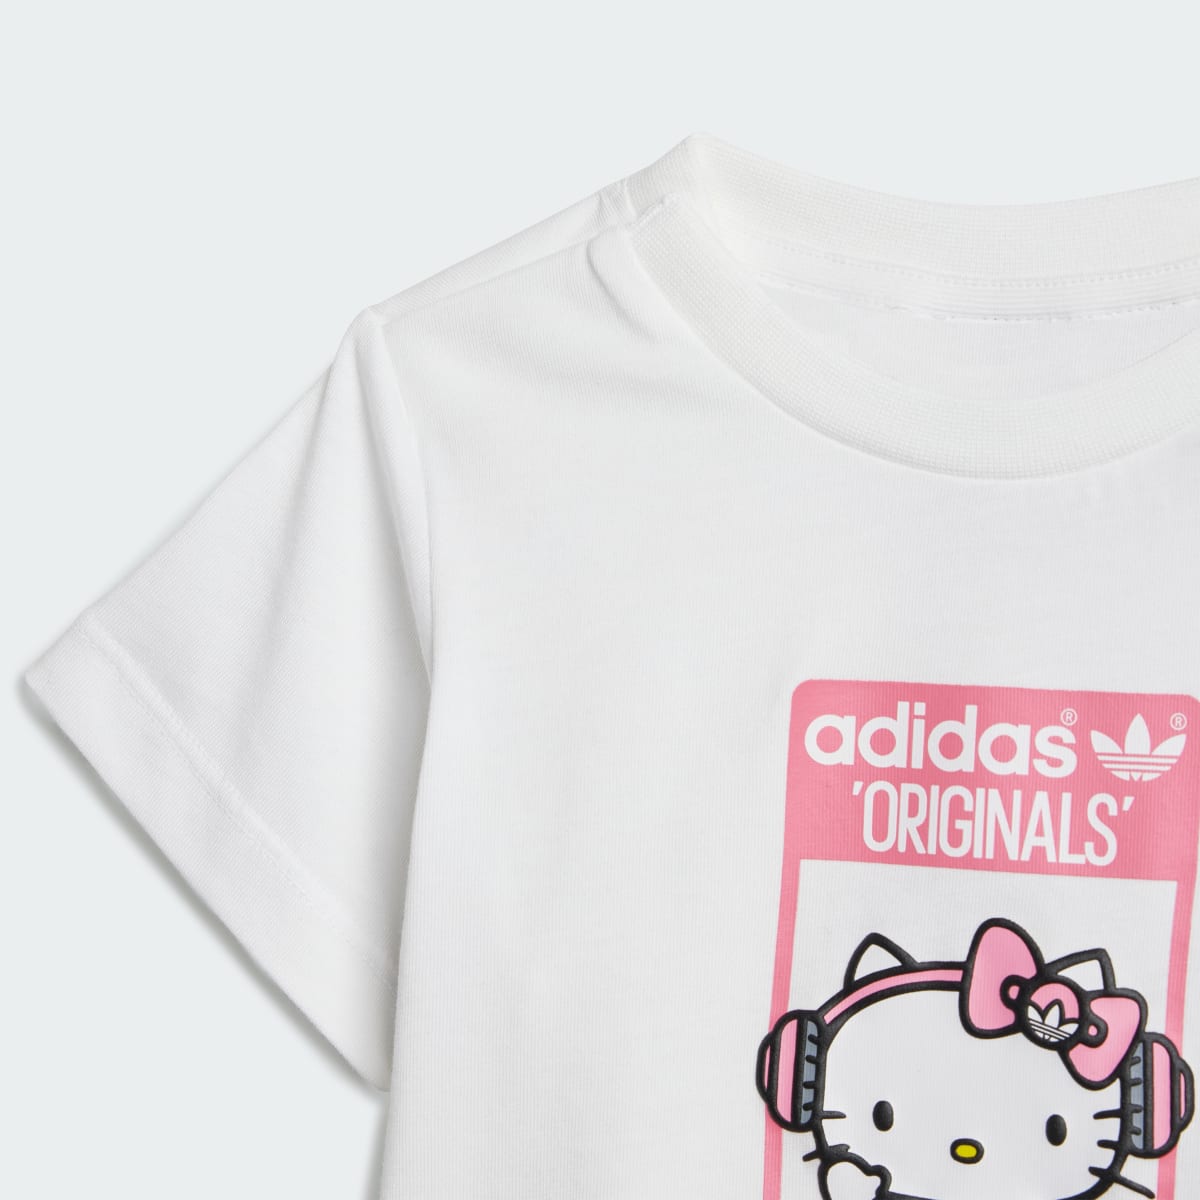 Adidas Originals x Hello Kitty Şort Tişört Takımı. 8